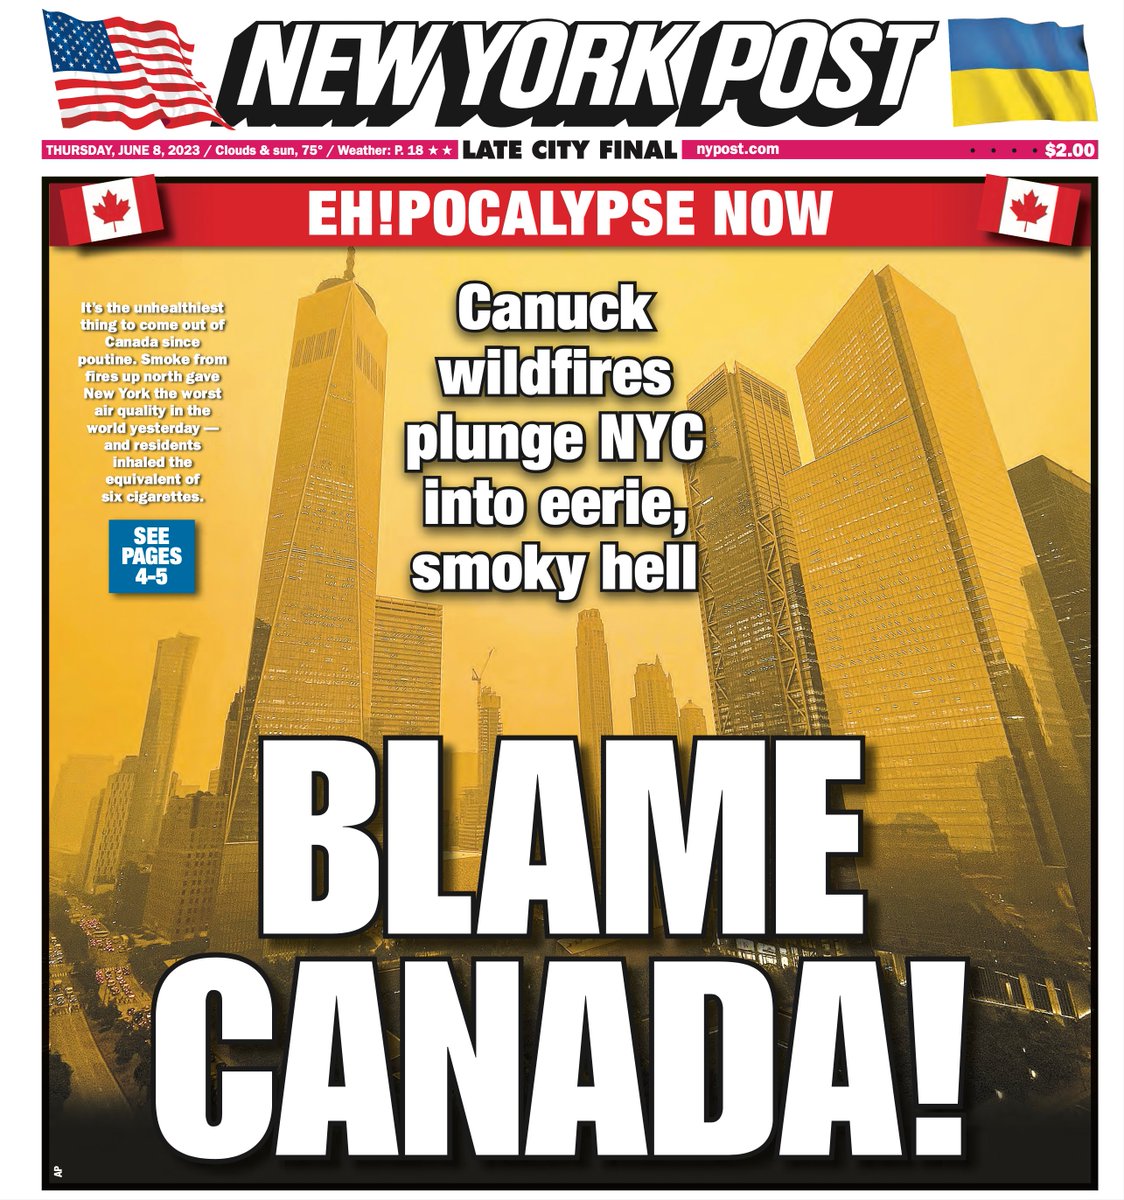 やはり新聞の見出しが分かりやすいのは大事。
「大気汚染はカナダのせいだ！」